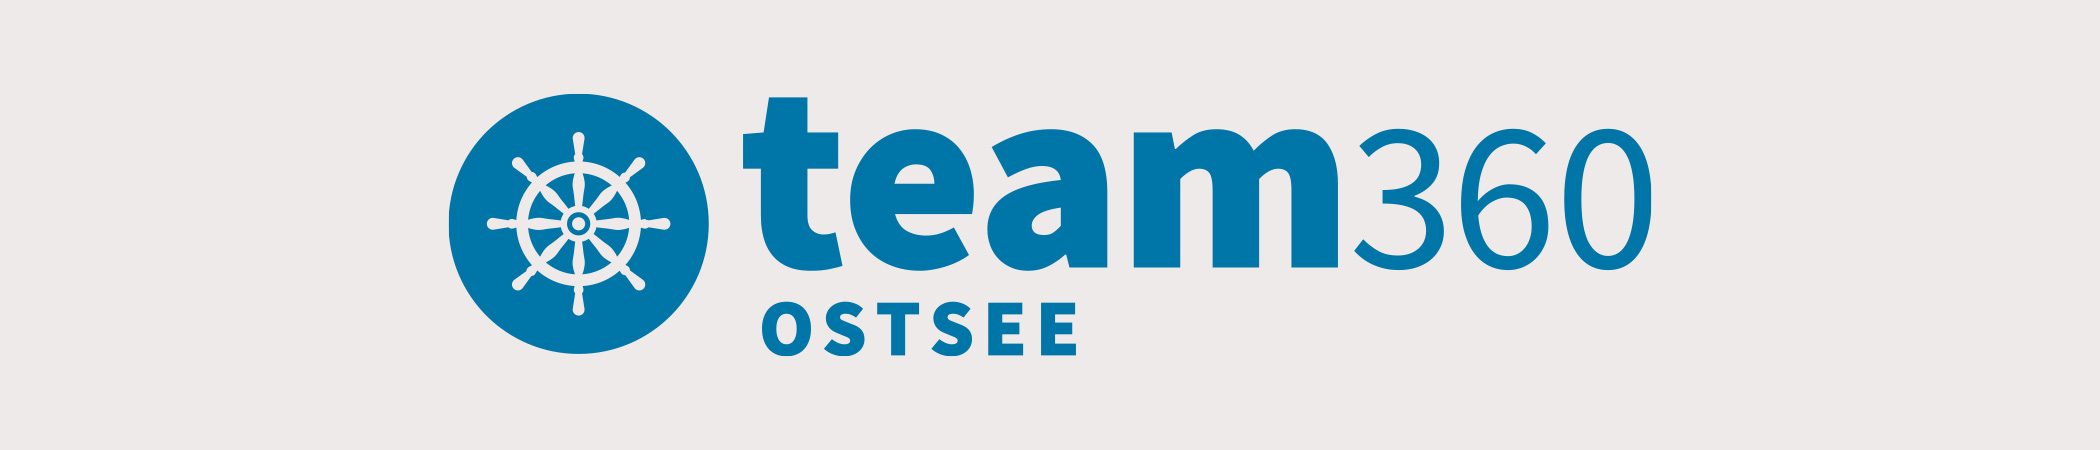 Team Ostsee | 360 Grad Rundgänge rund um Hamburg